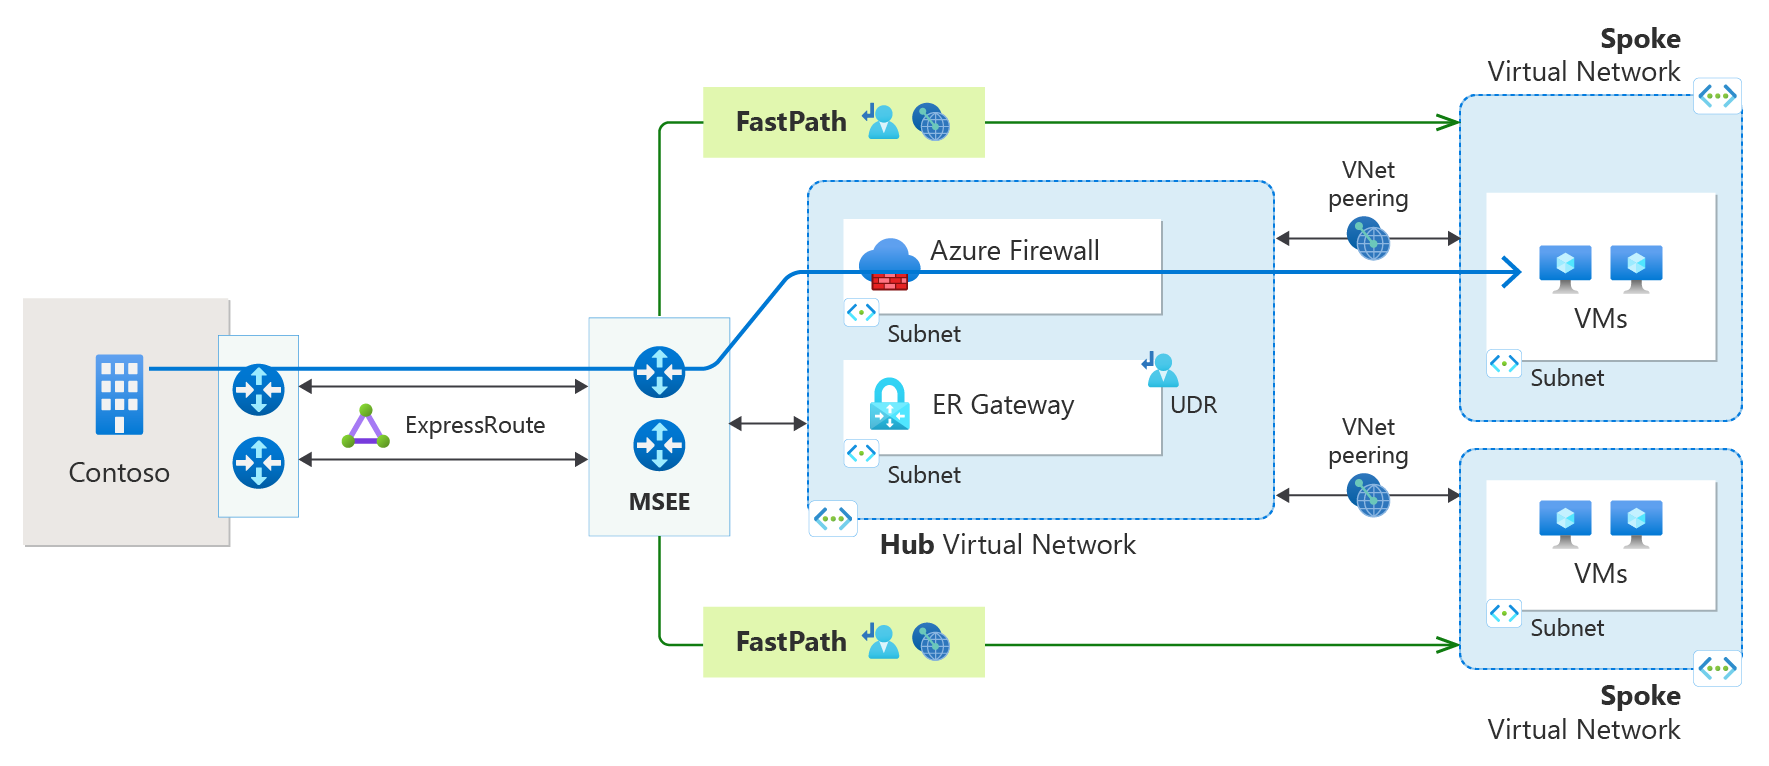 Diagram koneksi ExpressRoute dengan Fastpath dan peering jaringan virtual.